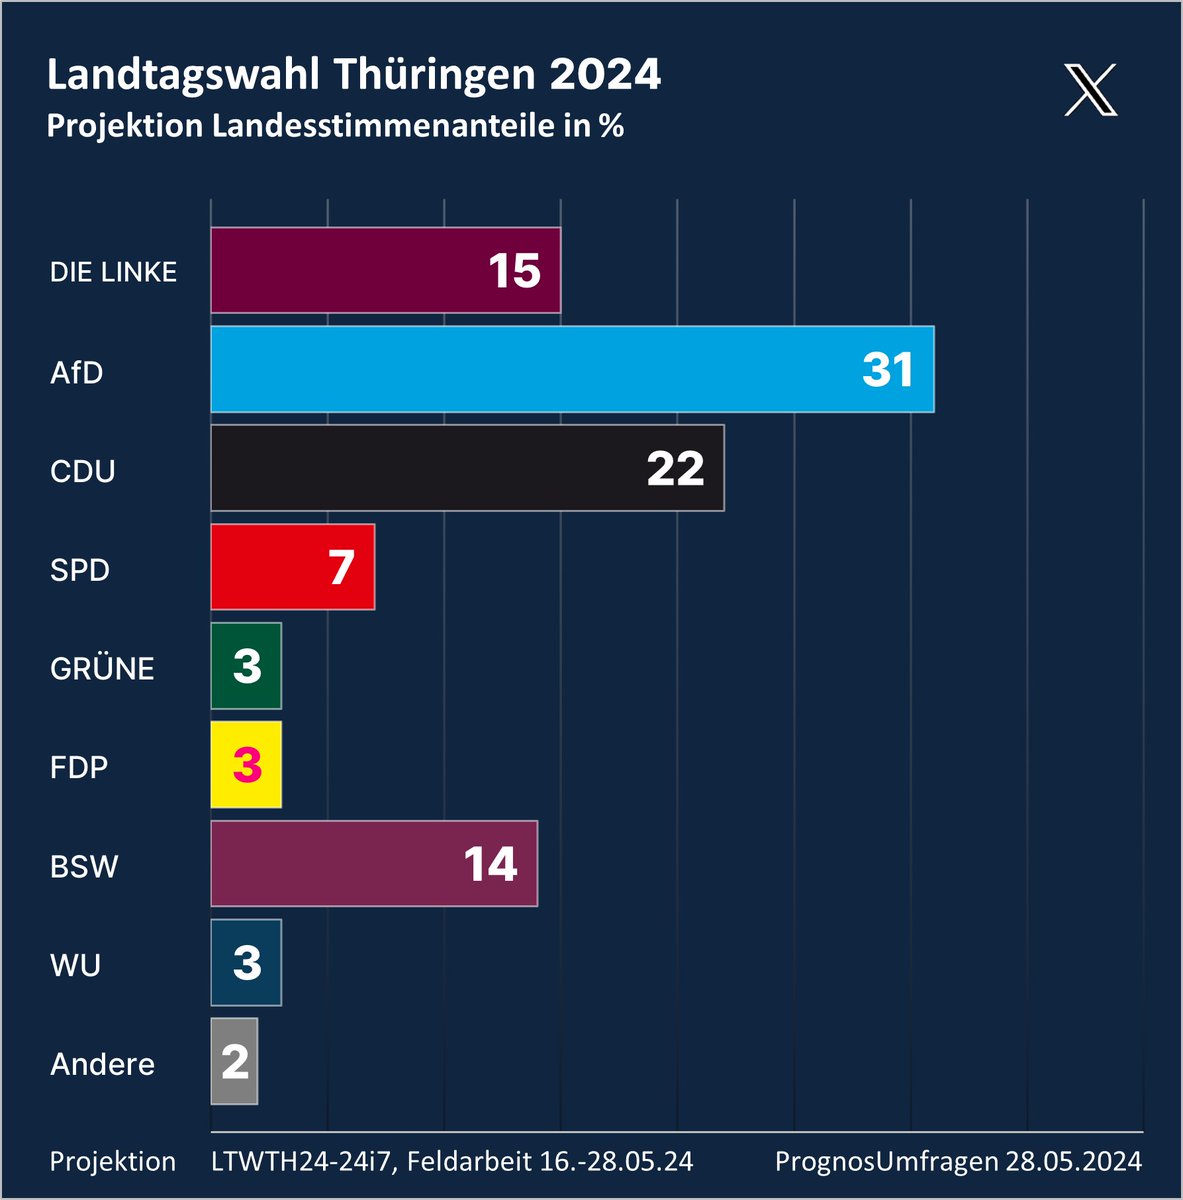 Landtagswahl Thüringen #LTWTH #LTW24

Das starke Abschneiden der #AfD bei den Kommunalwahlen wirkt sich auch auf die Projektion zur Landtagswahl aus. Mit 31% steht der #Höcke-Verband so stark wie seit Anfäng März nicht. Auch DIE LINKE & SPD verbessern sich. GRÜNE & BSW verlieren.